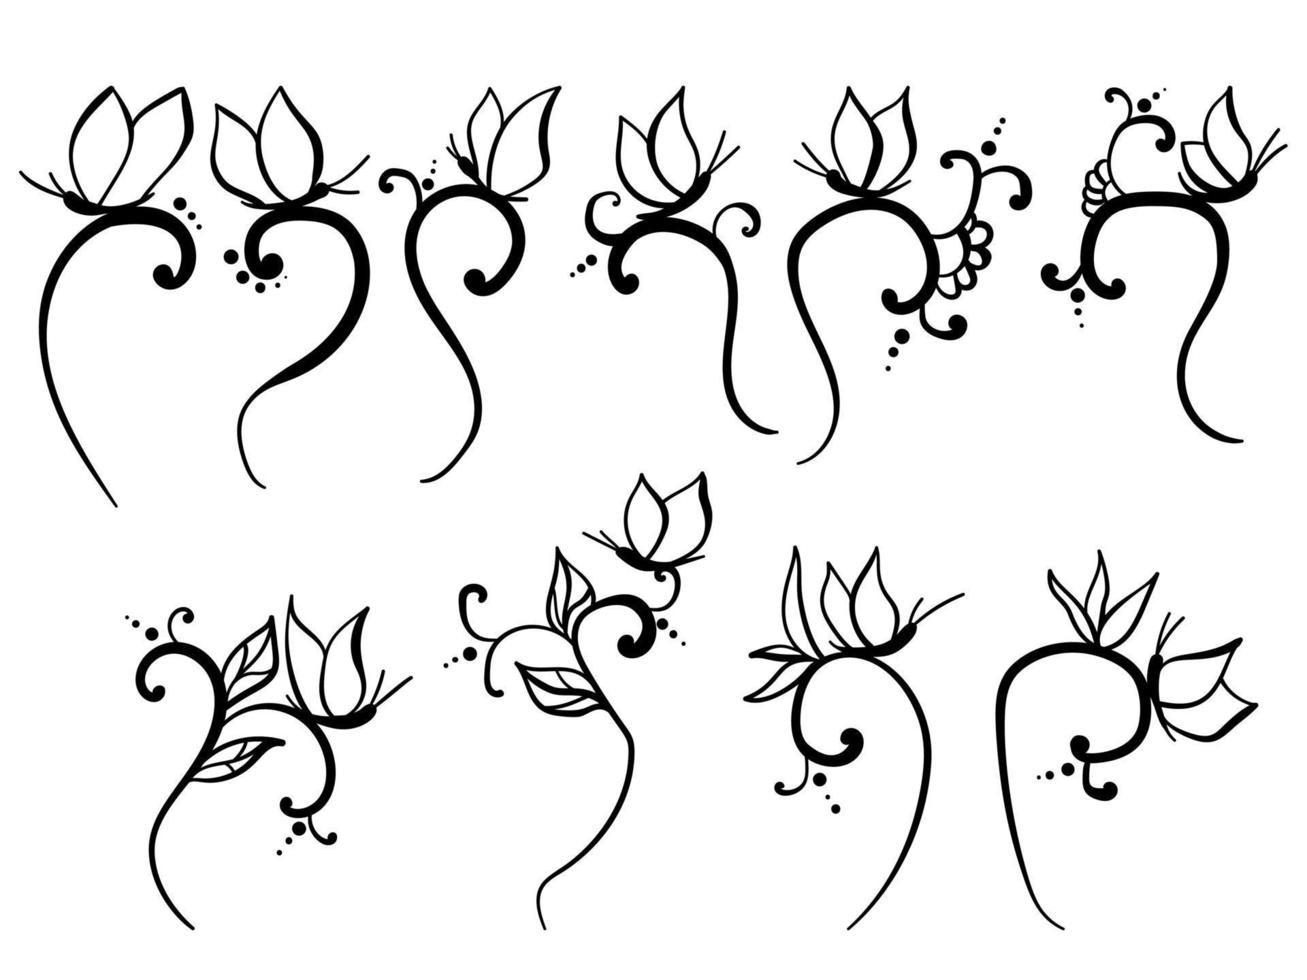 reeks van krullen met vlinders, abstract tekening motieven vector